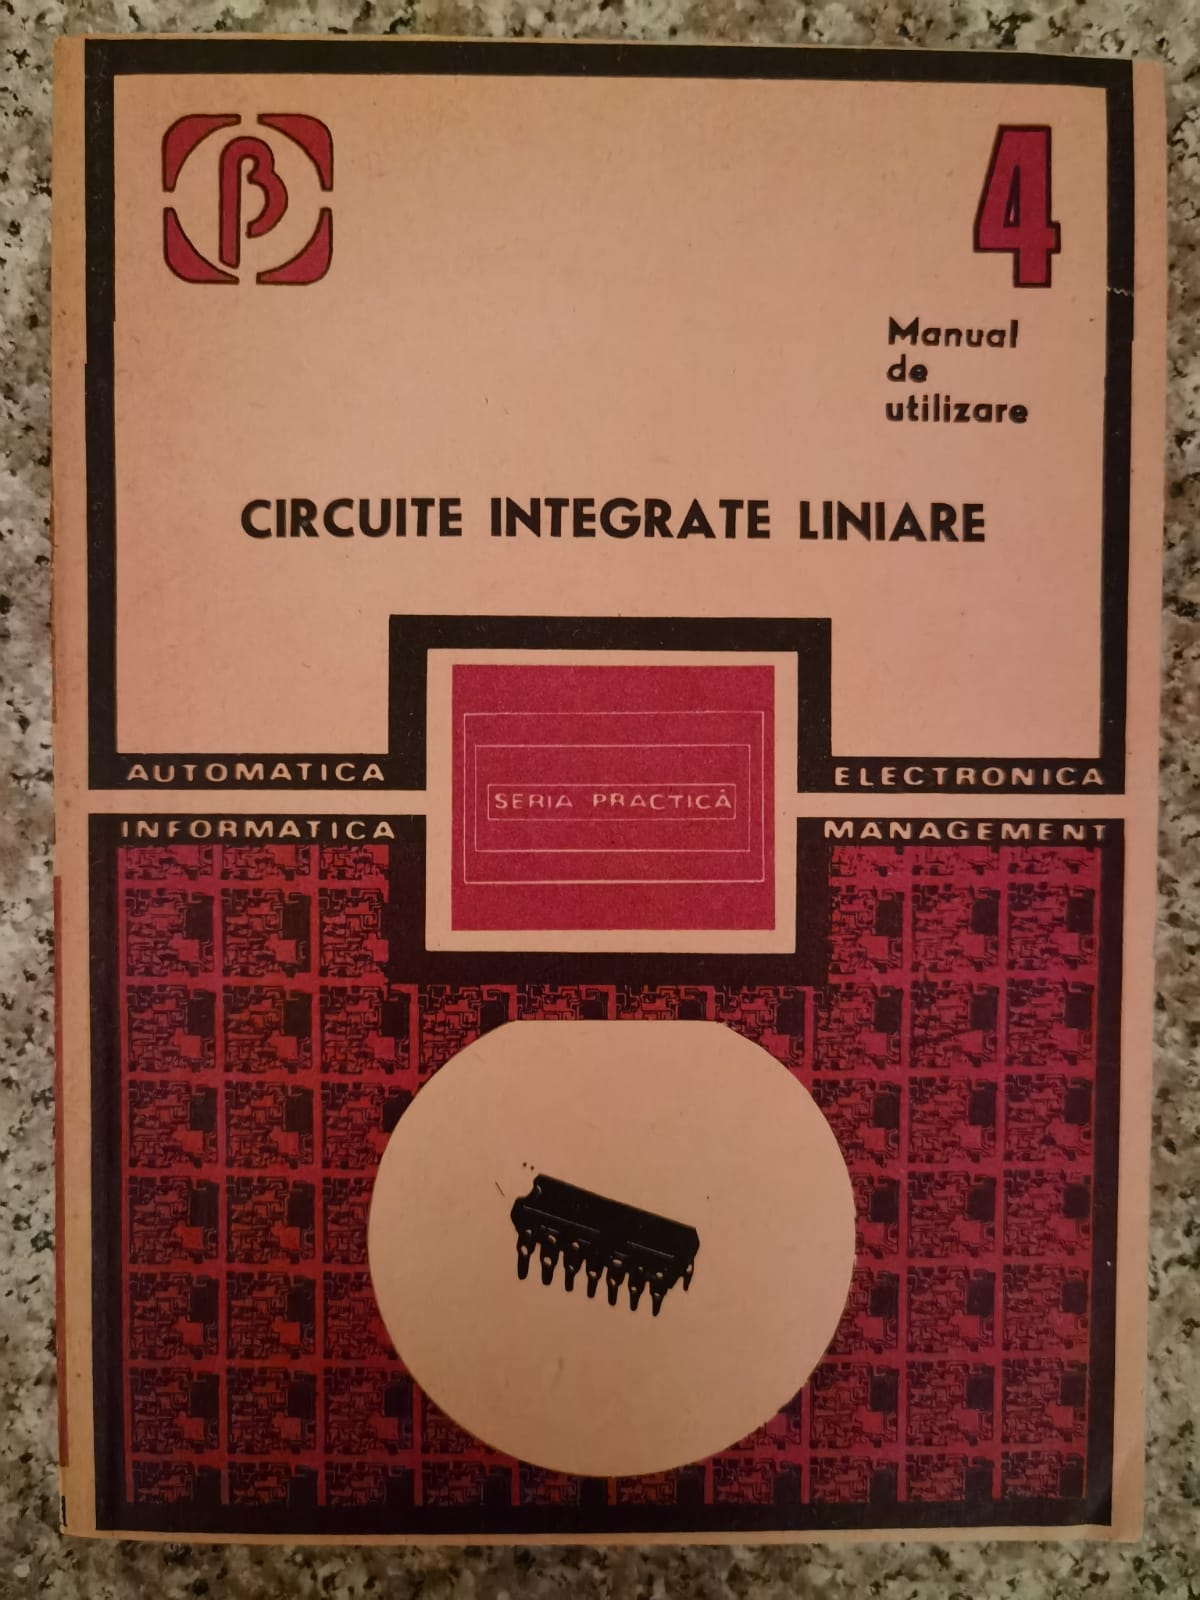 circuite integrate liniare manual de utilizare 4                                                     m. bodea a. vatasescu g. tanase s. negru a. nastase v. gheorghiu n. marinescu                       